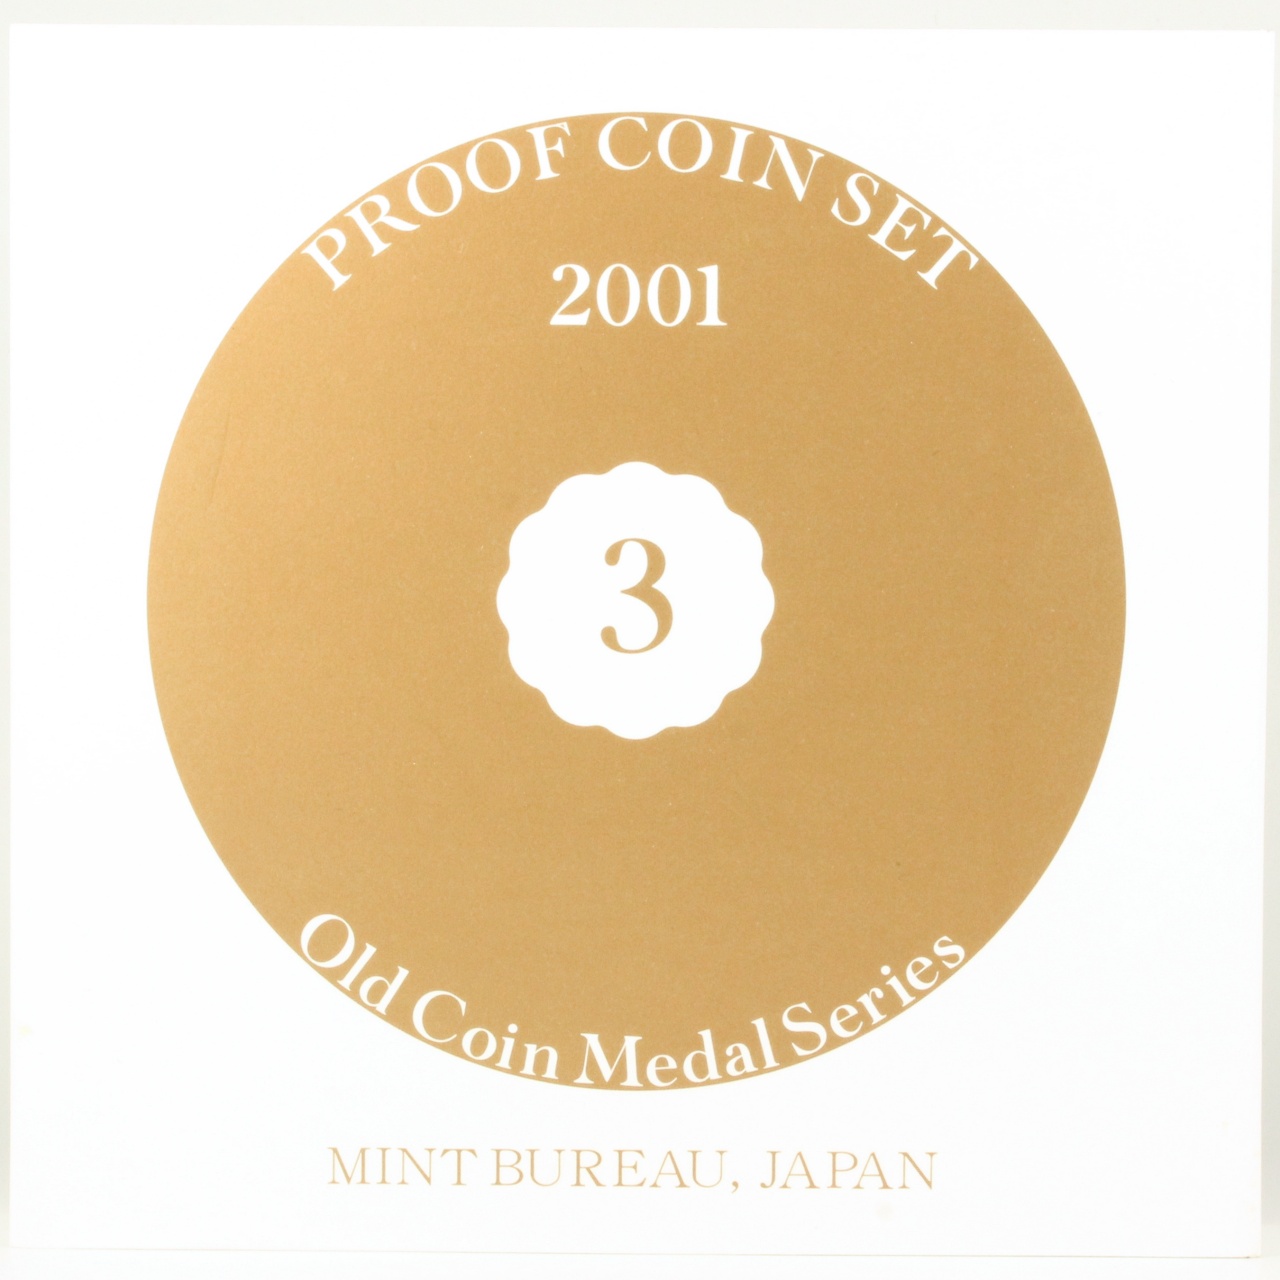 オールドコイン プルーフ貨幣セット ミントセット 平成13年 2001年 大蔵省 造幣局 古銭 記念メダル コインセット | ミスターコインズ